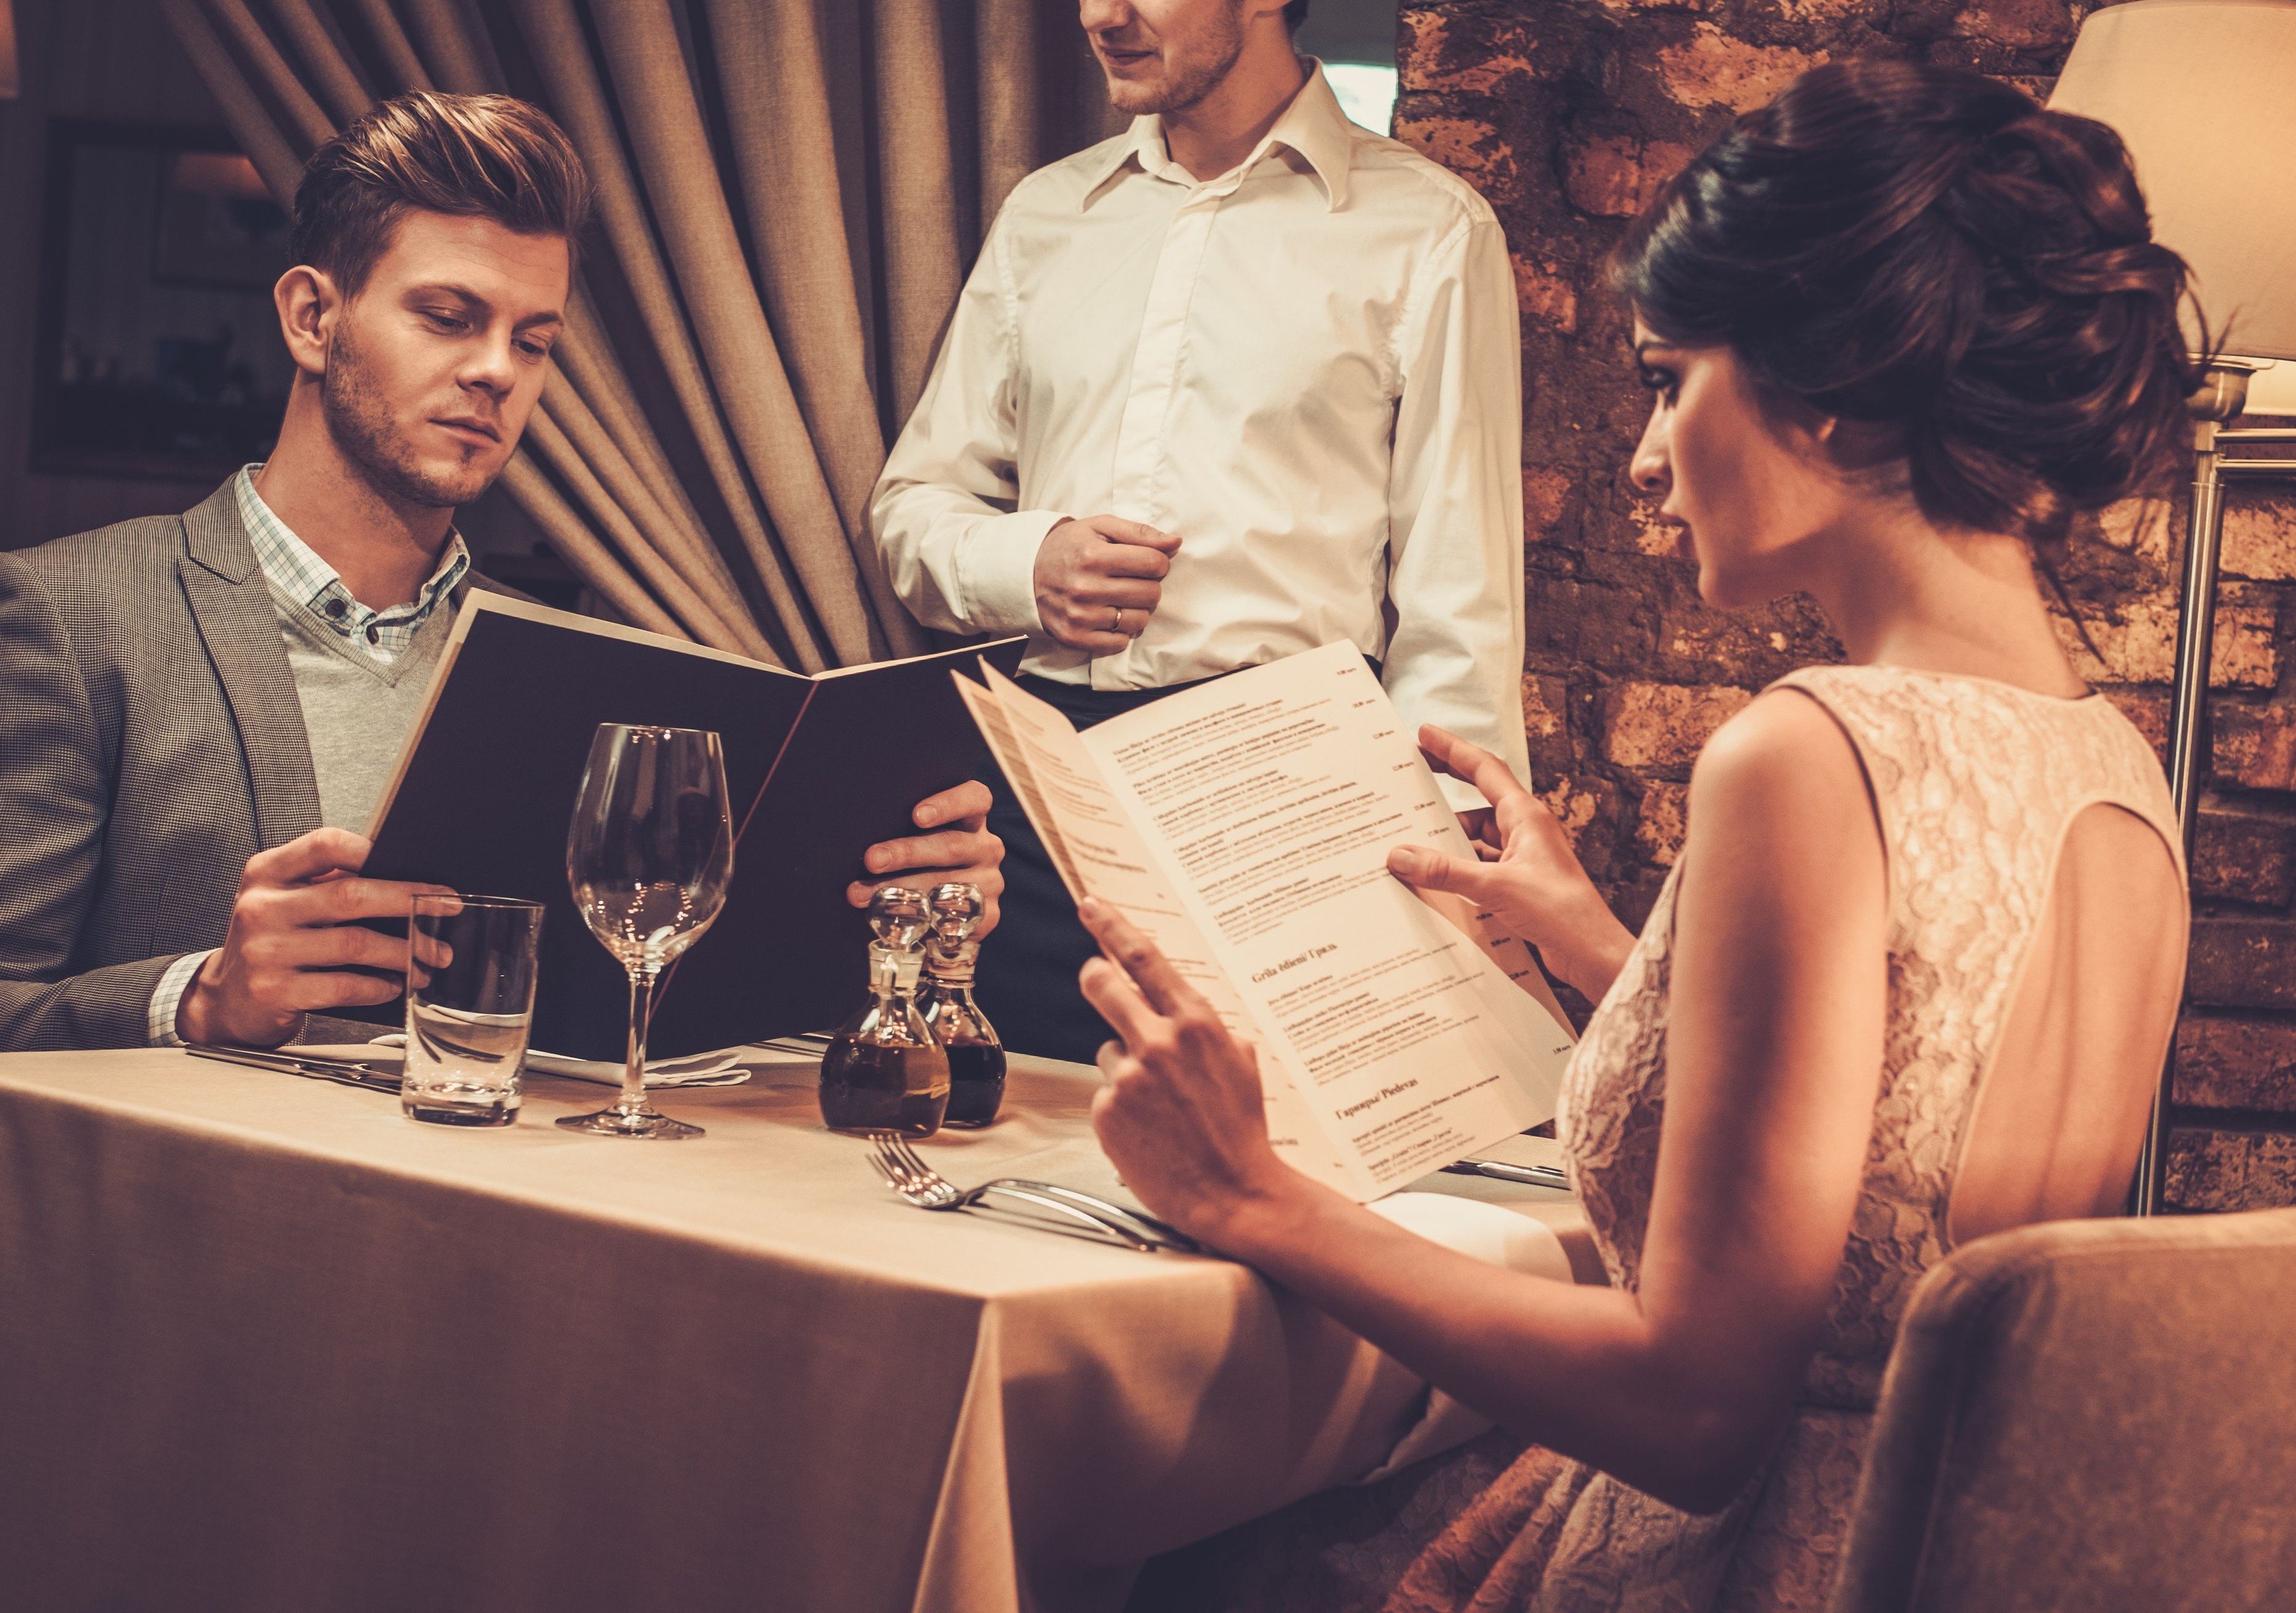 Restaurace, večeře, rande, schůzka, romantika. Ilustrační foto